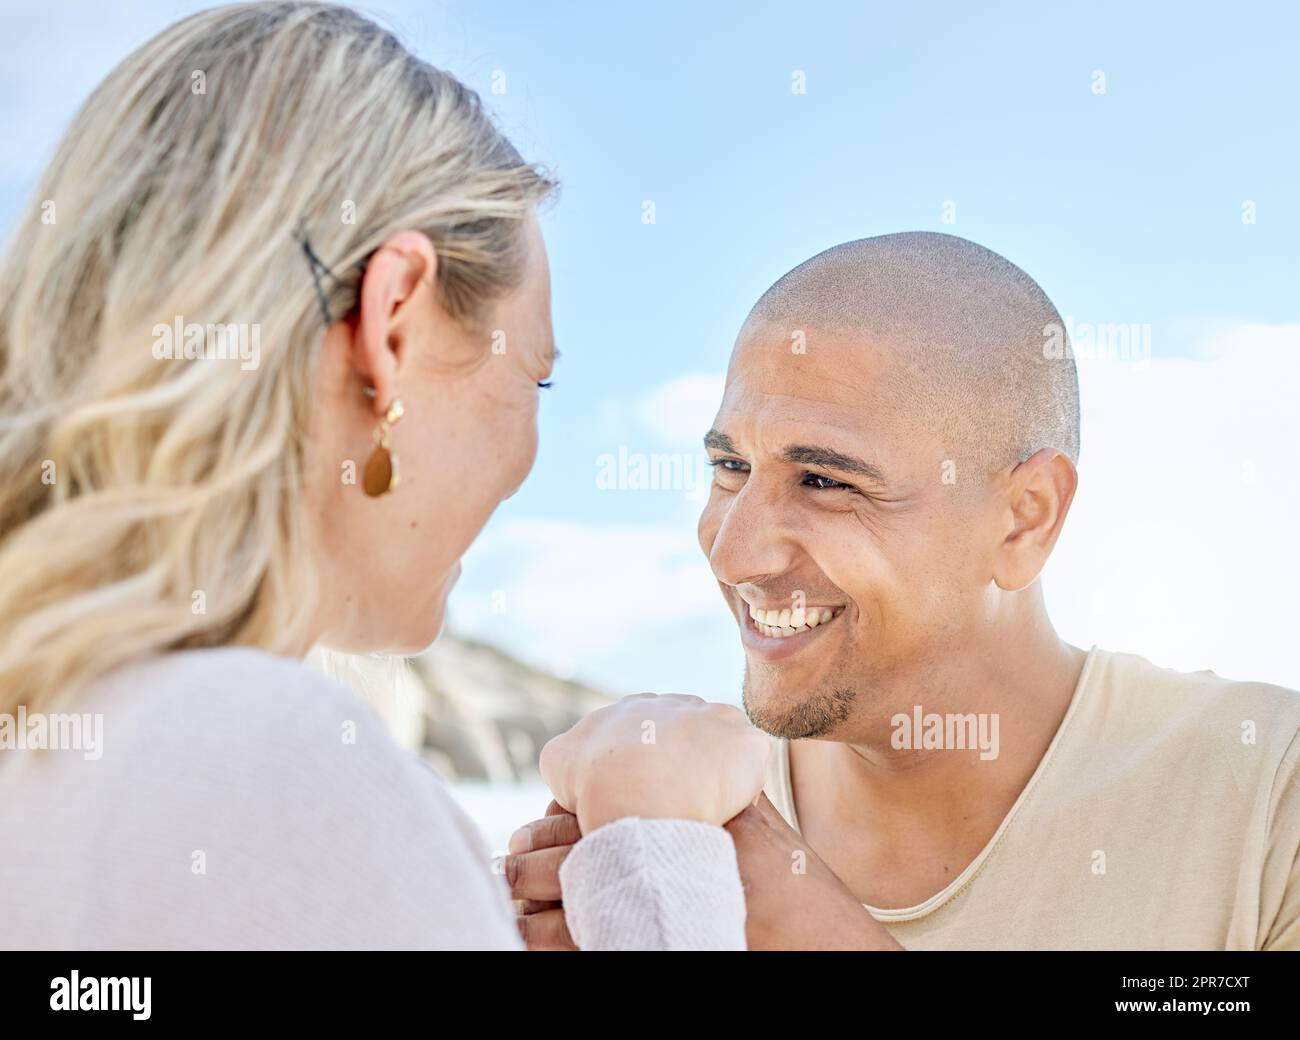 Ein junger Mann, der seiner Freundin im Sommer am Strand einen Heiratsantrag macht. Ein glückliches gemischtrassiges Paar, das Händchen hält und lächelt. Bald Ehemann und Ehefrau, die draußen liebevoll in einen anderen Blick starren Stockfoto